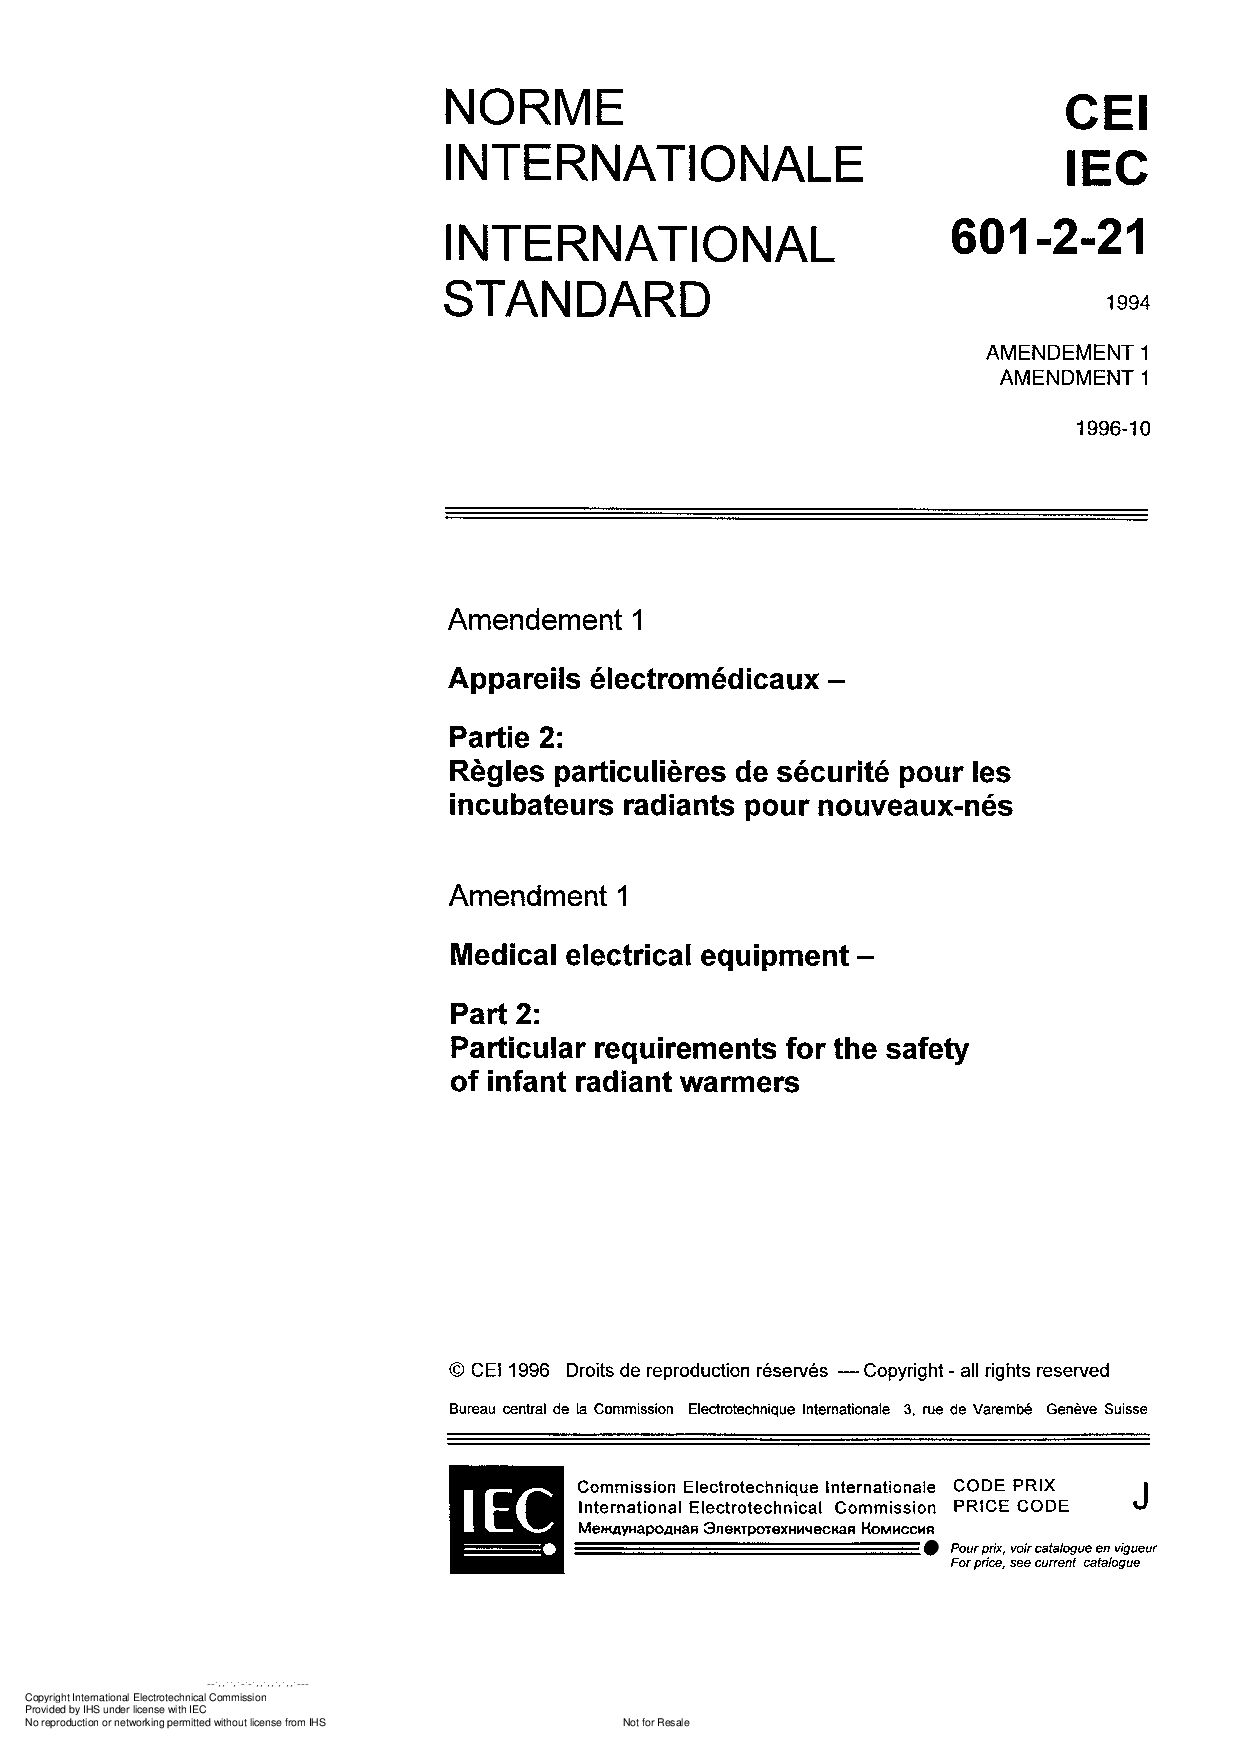 IEC 60601-2-21:1994